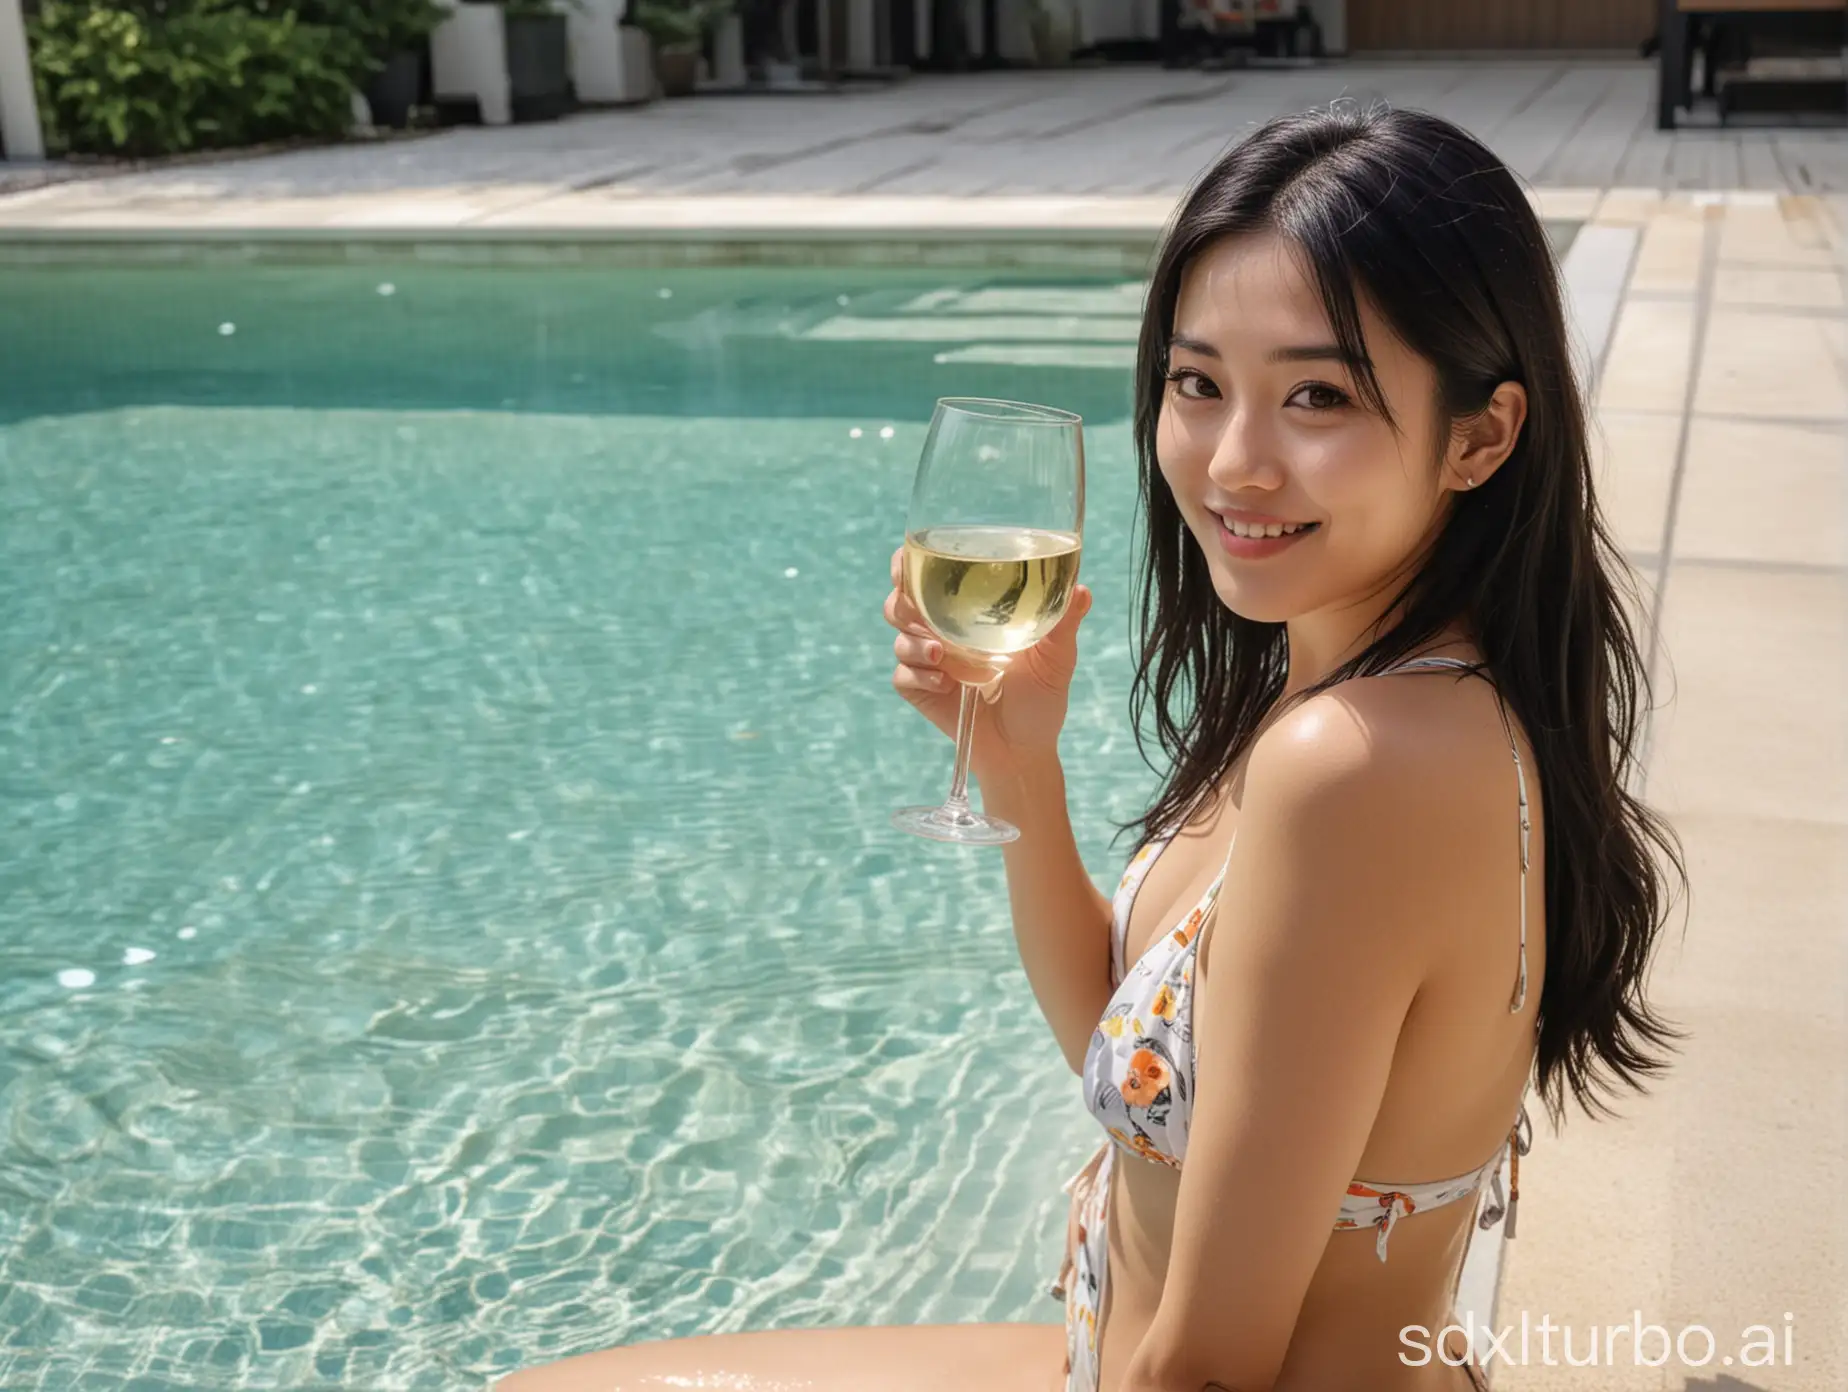 Stylish-Japanese-Woman-Enjoying-Poolside-Serenity-with-White-Wine